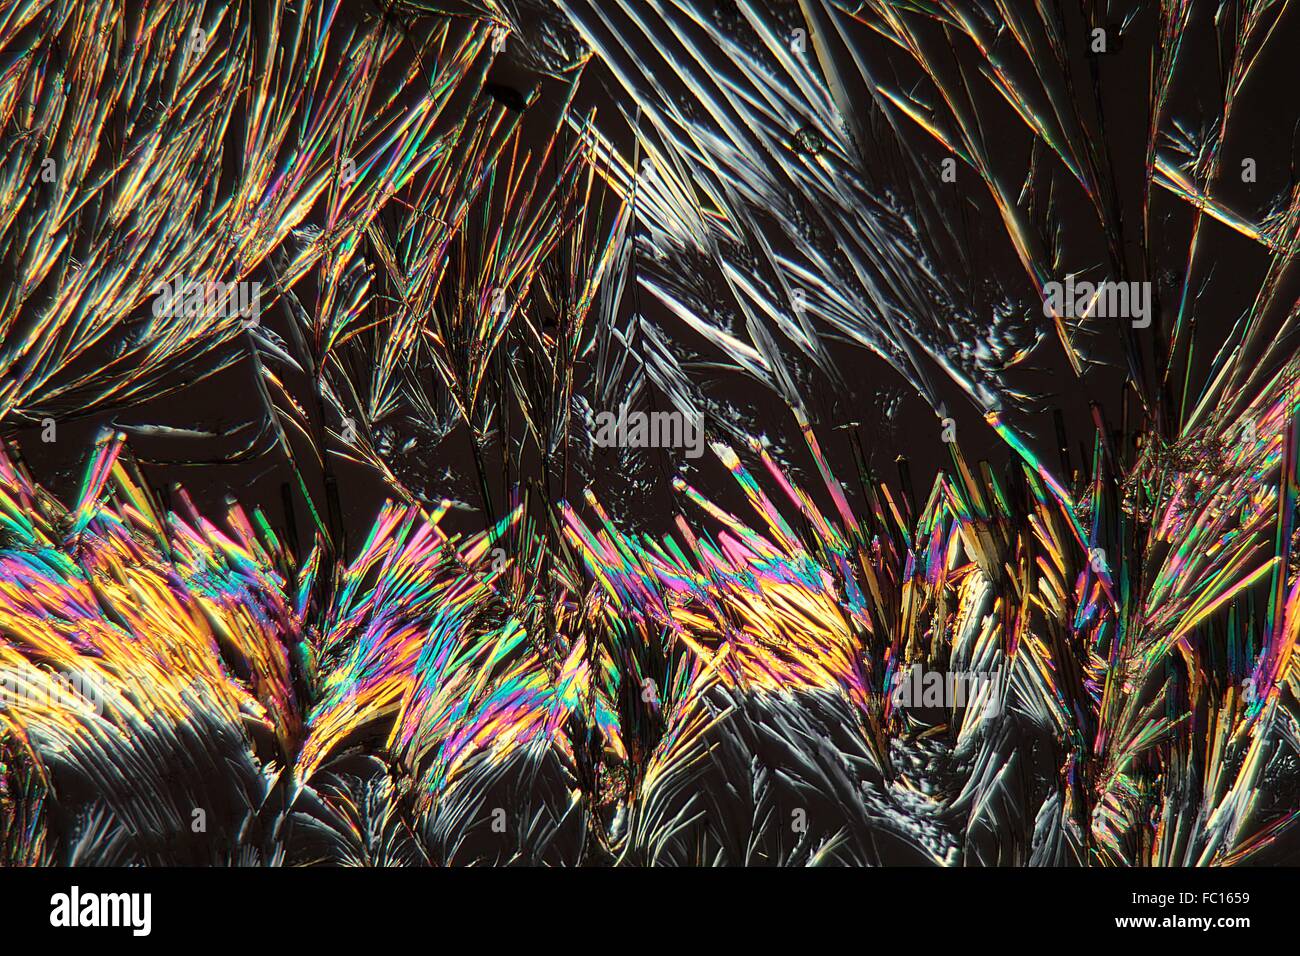 La cumarina cristales bajo el microscopio. Foto de stock